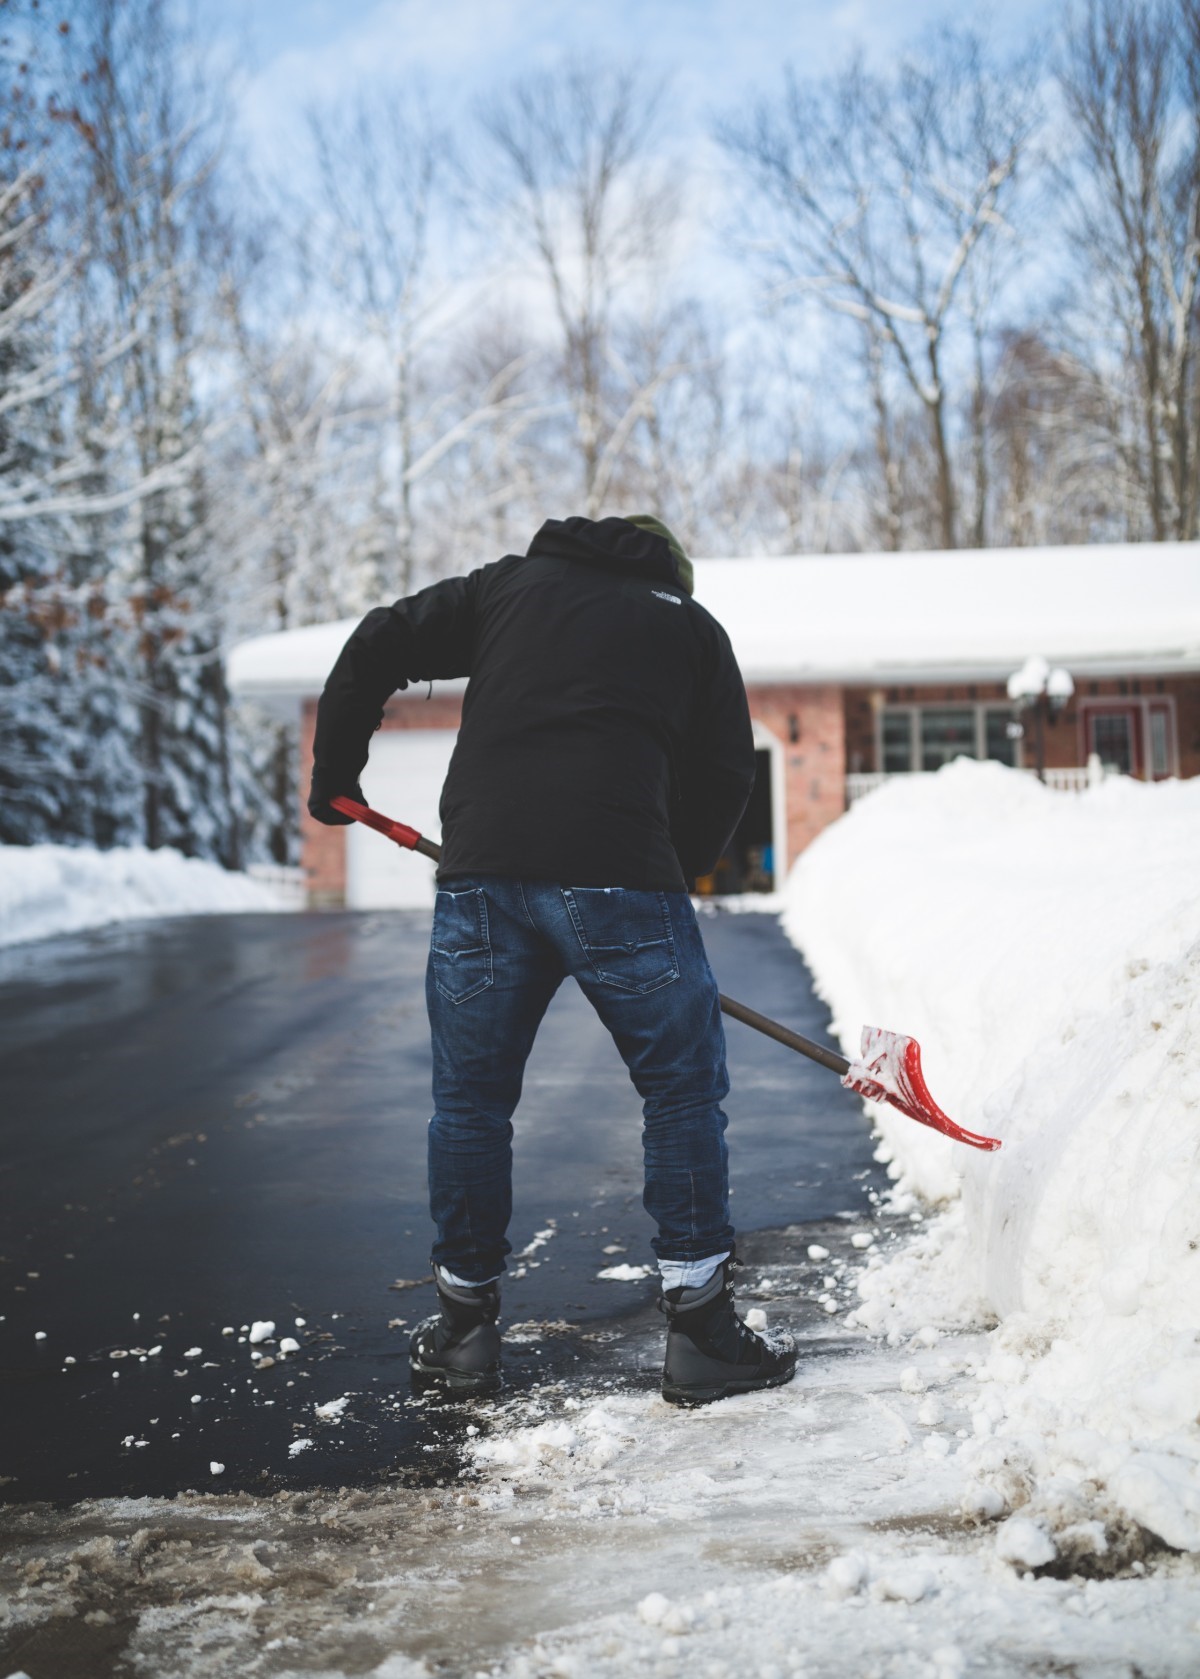 Shoveling, Snow, Winter Tips